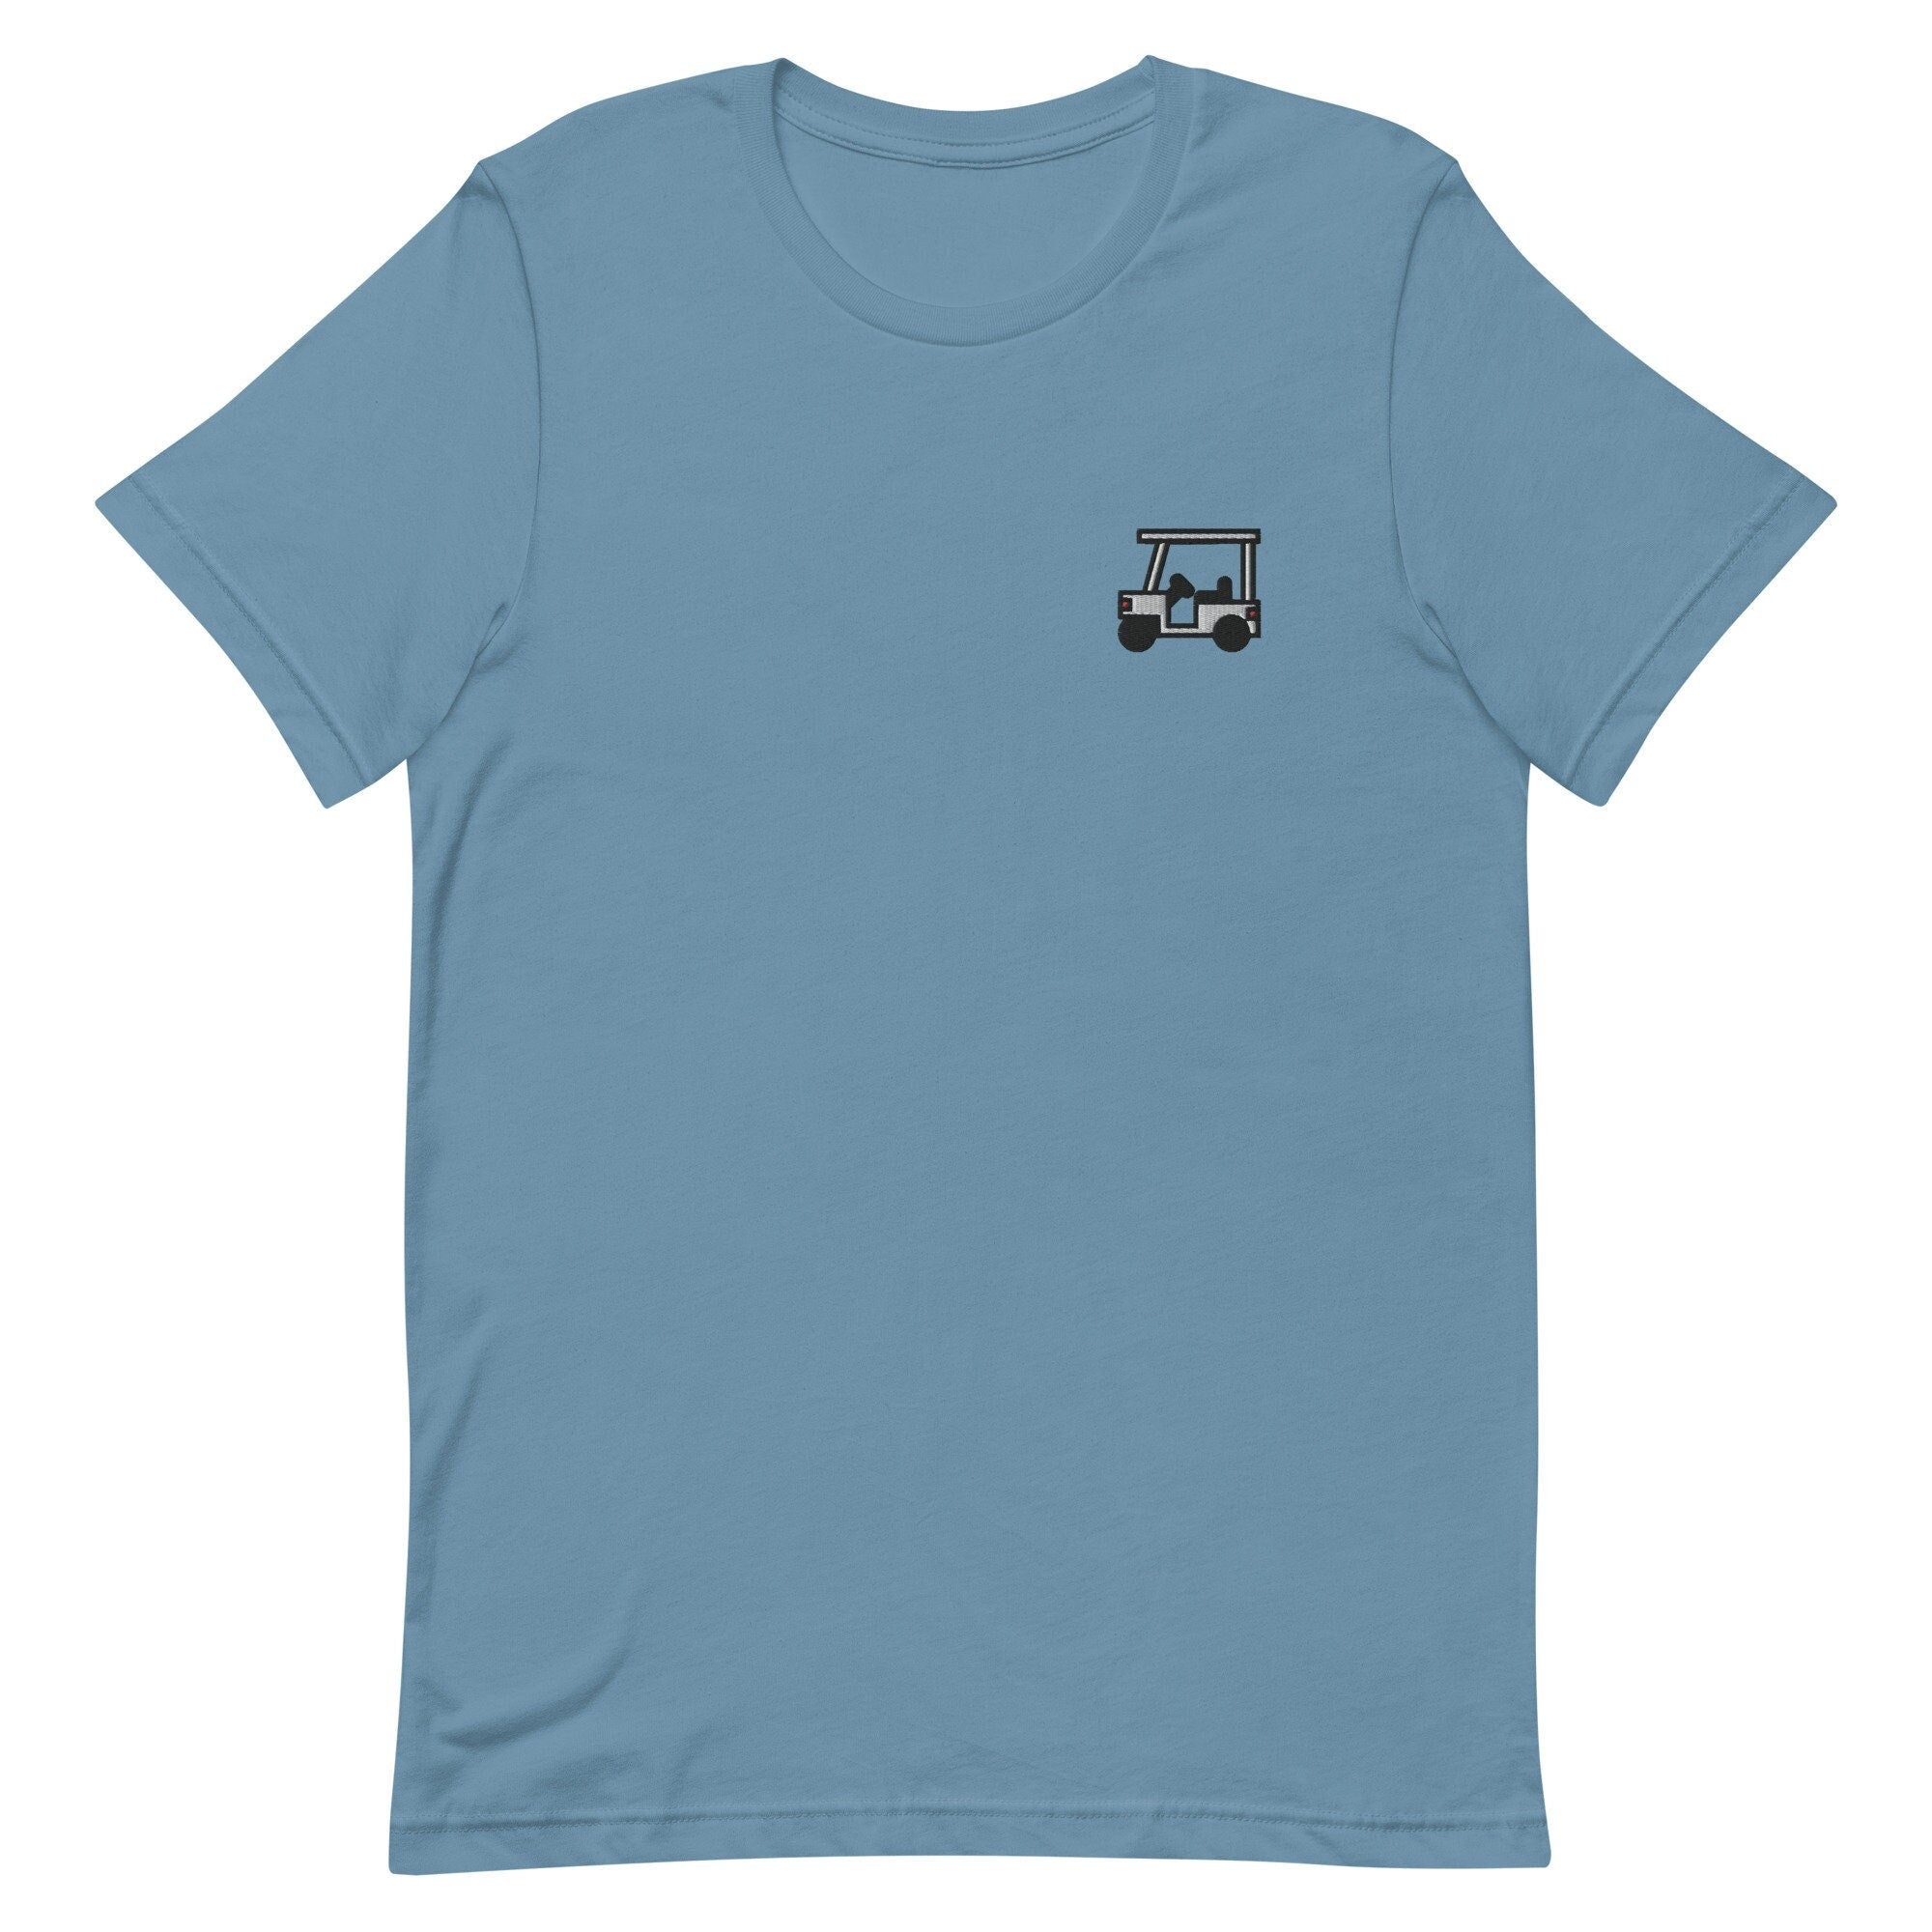 Golf Cart Premium Men's T-Shirt, Embroidered Men's T-Shirt Gift for Boyfriend, Men's Short Sleeve Shirt - Multiple Colors